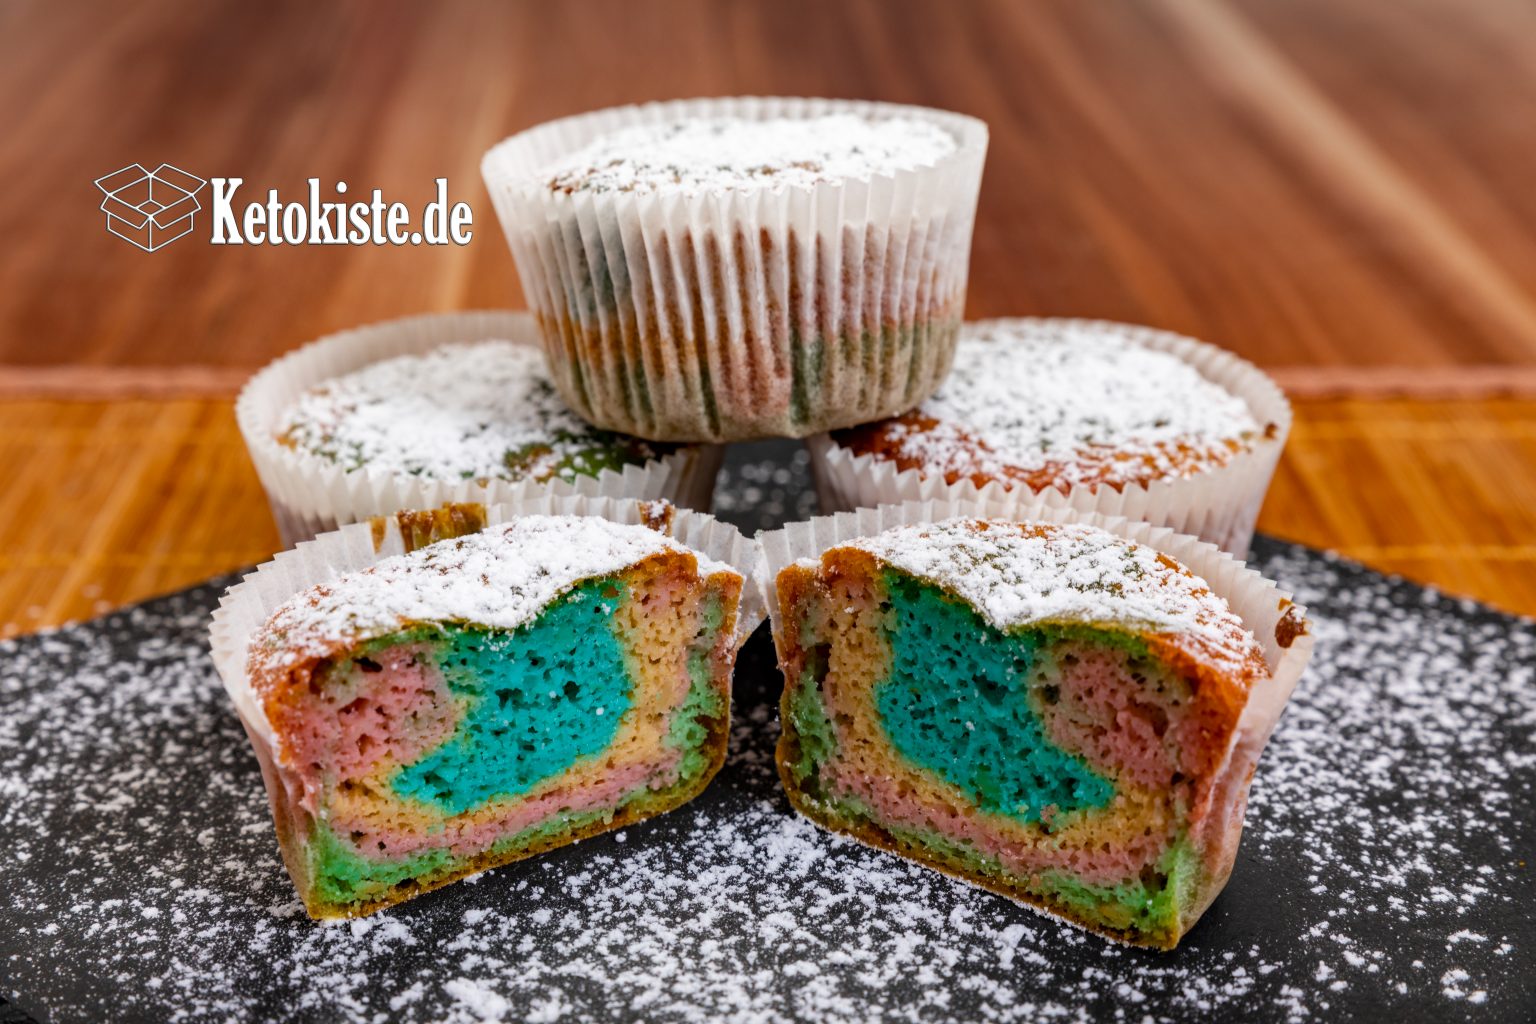 Keto Regenbogen Muffins — Ketokiste.de - Alles rund um die ketogene ...